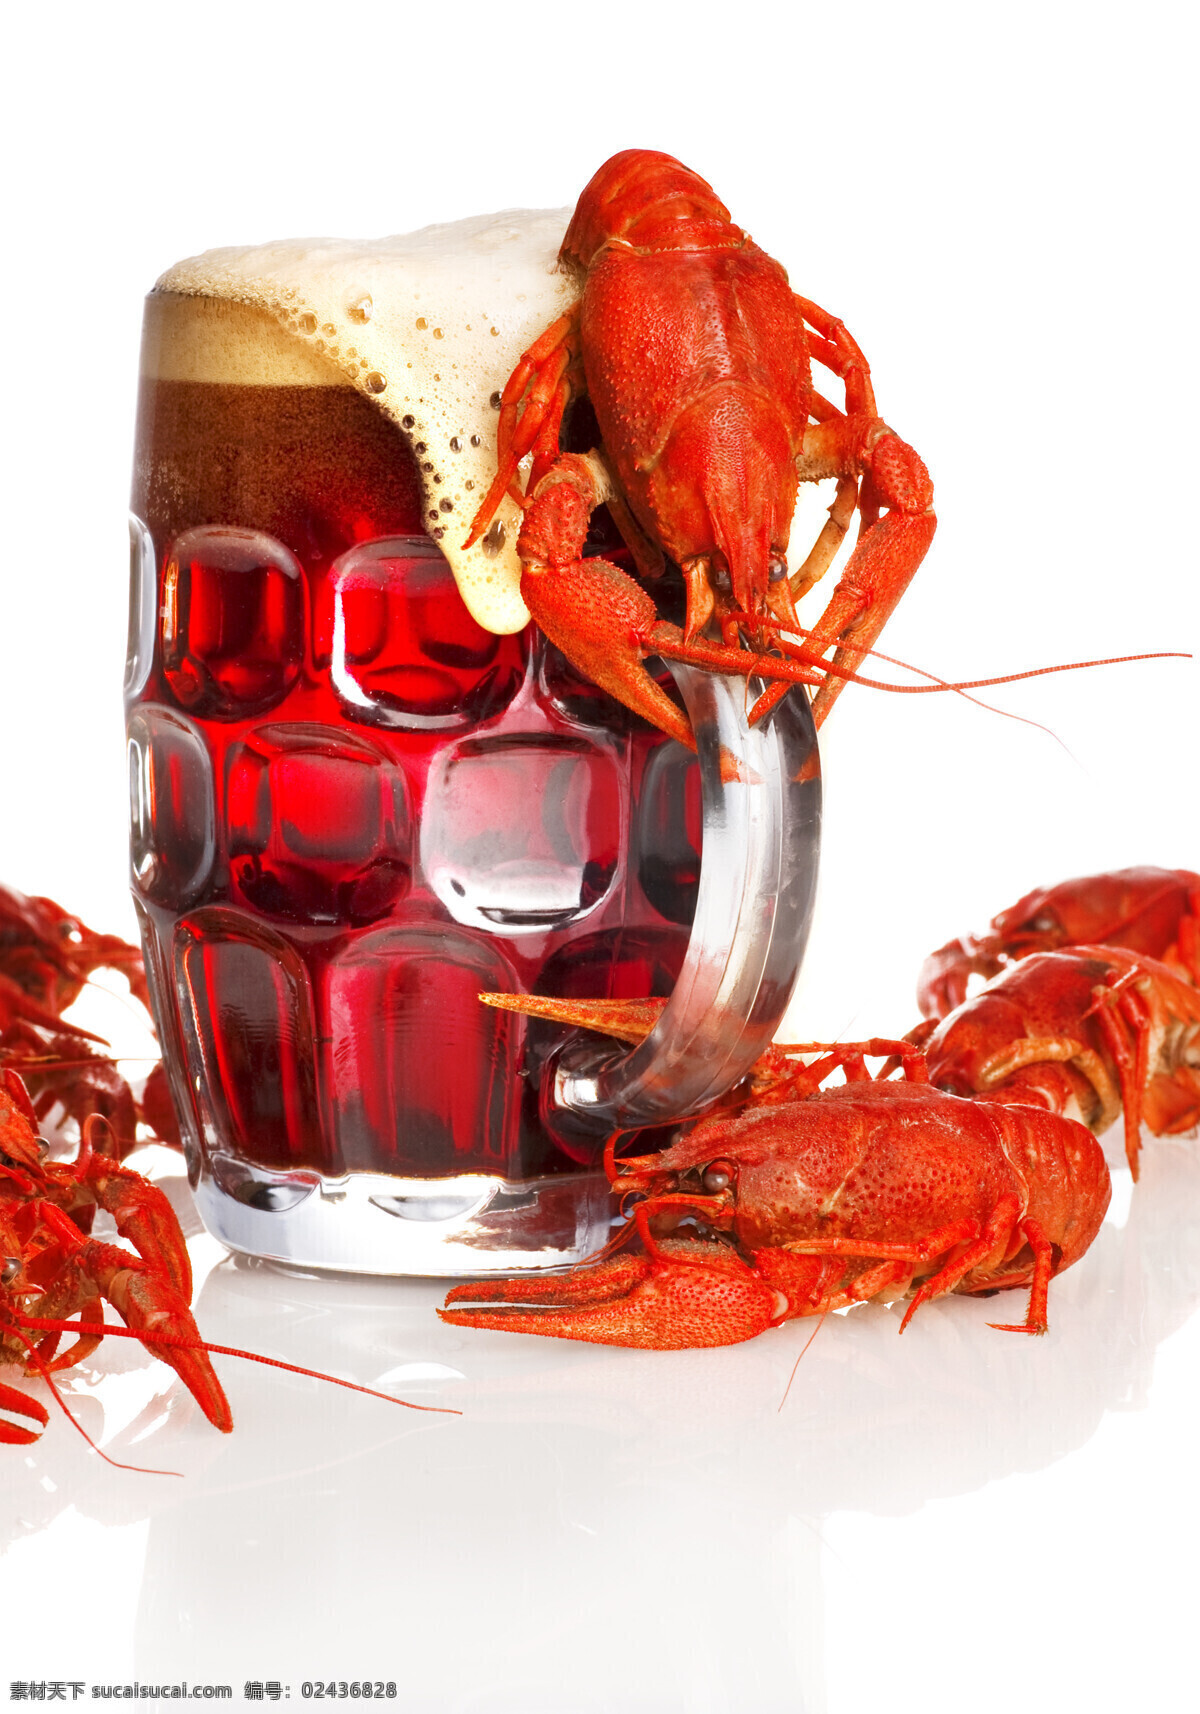 小 龙虾 一杯 啤酒 玻璃杯 酒杯 小龙虾 海鲜 美食 酒水饮料 餐饮美食 酒类图片